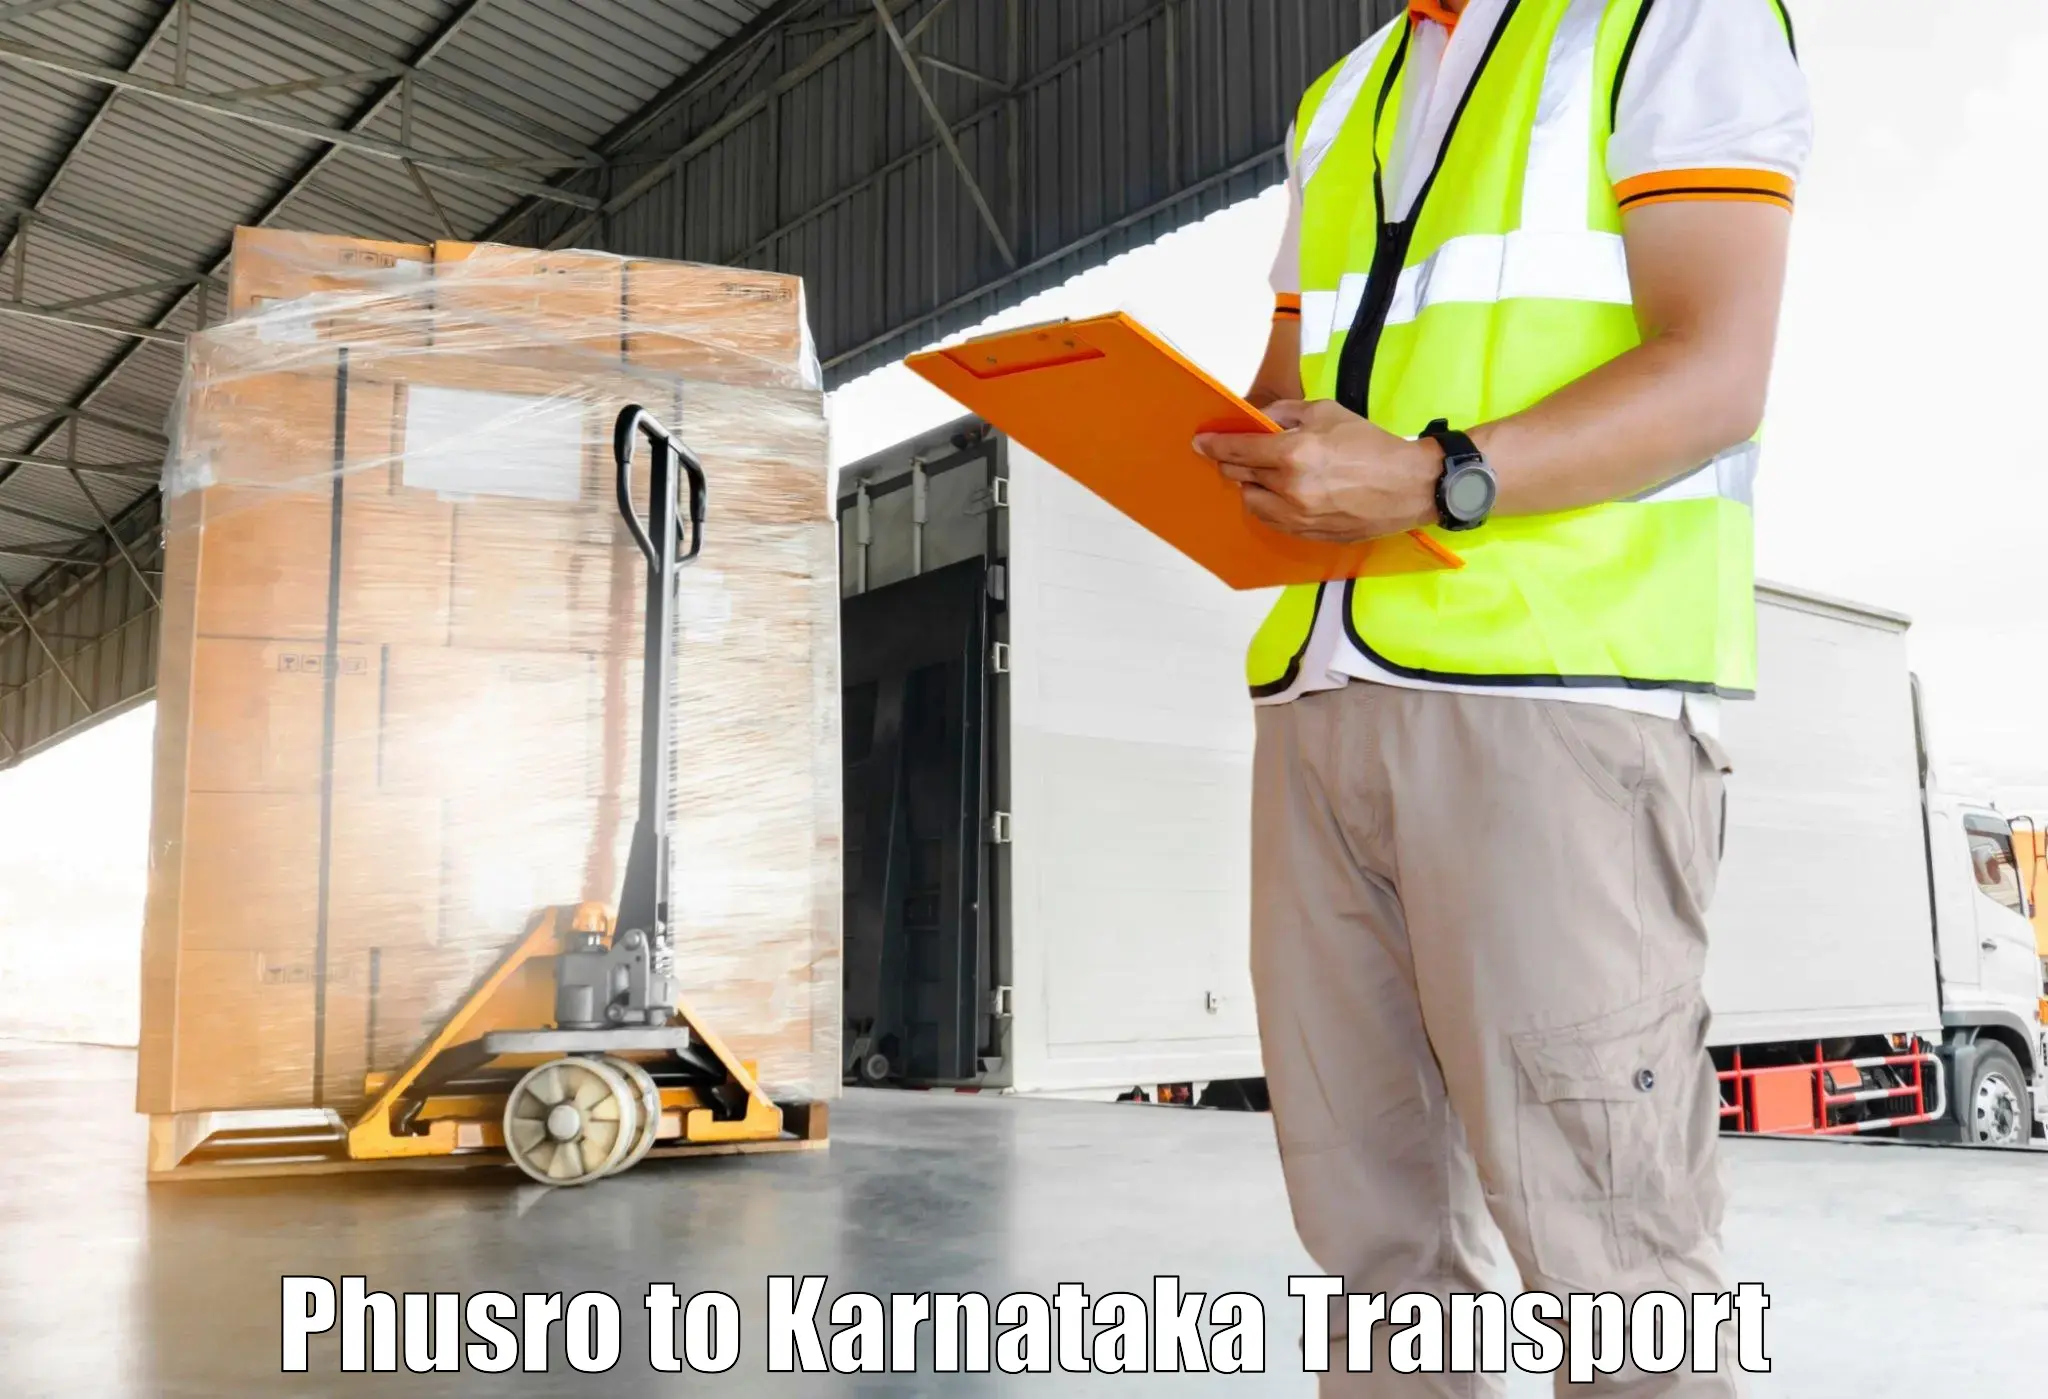 Pick up transport service Phusro to Basavana Bagewadi